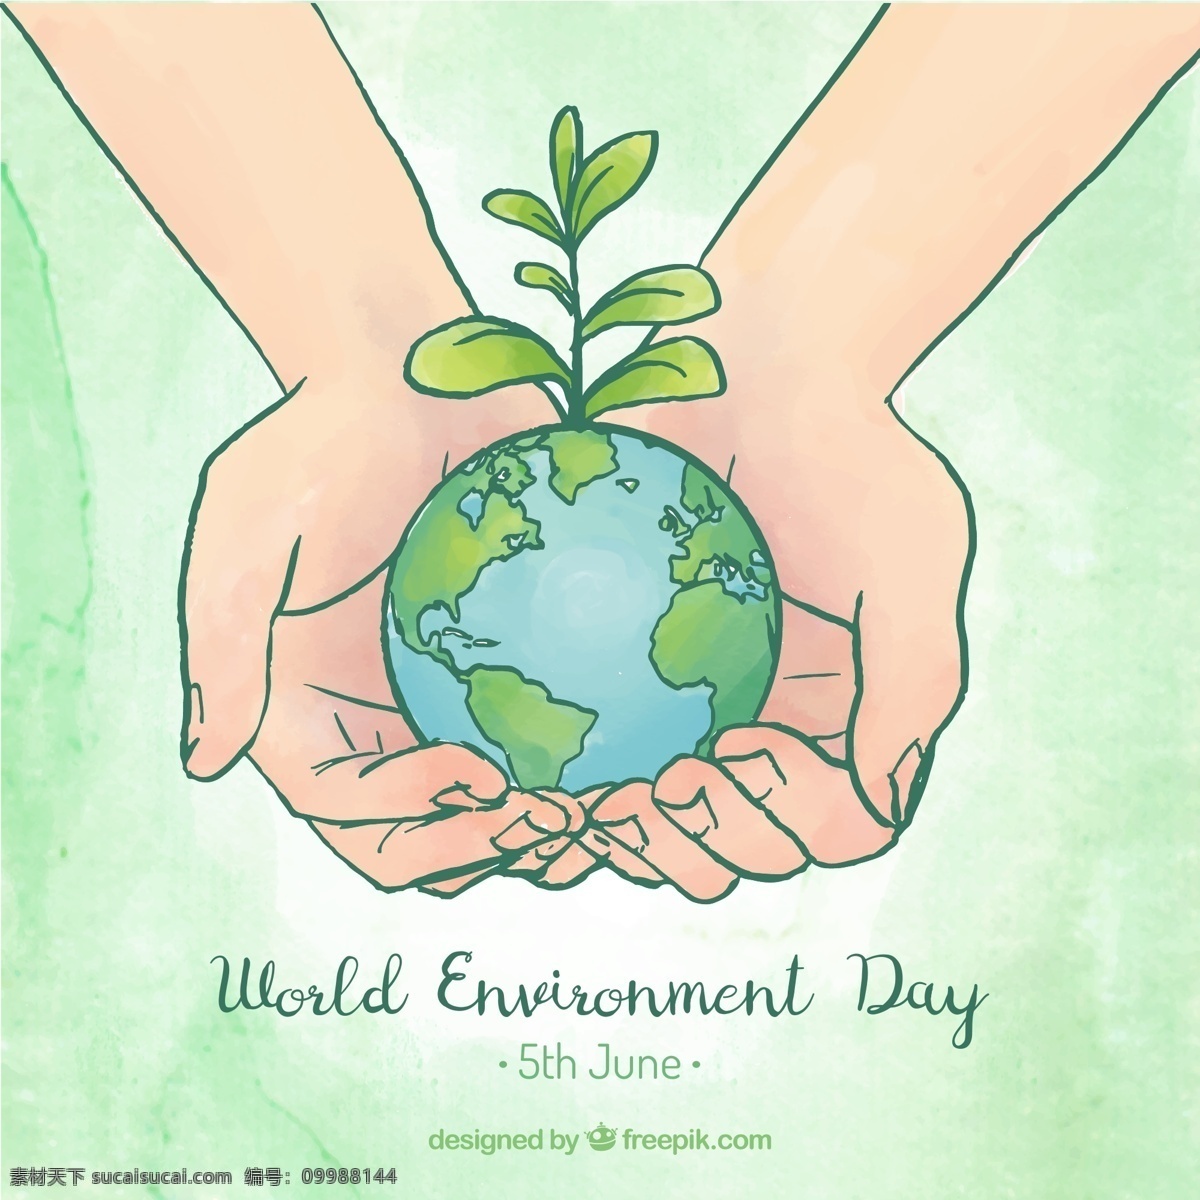 世界环境日 手 捧 地球 宣传画 矢量图 树苗 手势 捧起 彩绘 world environment day 贺卡